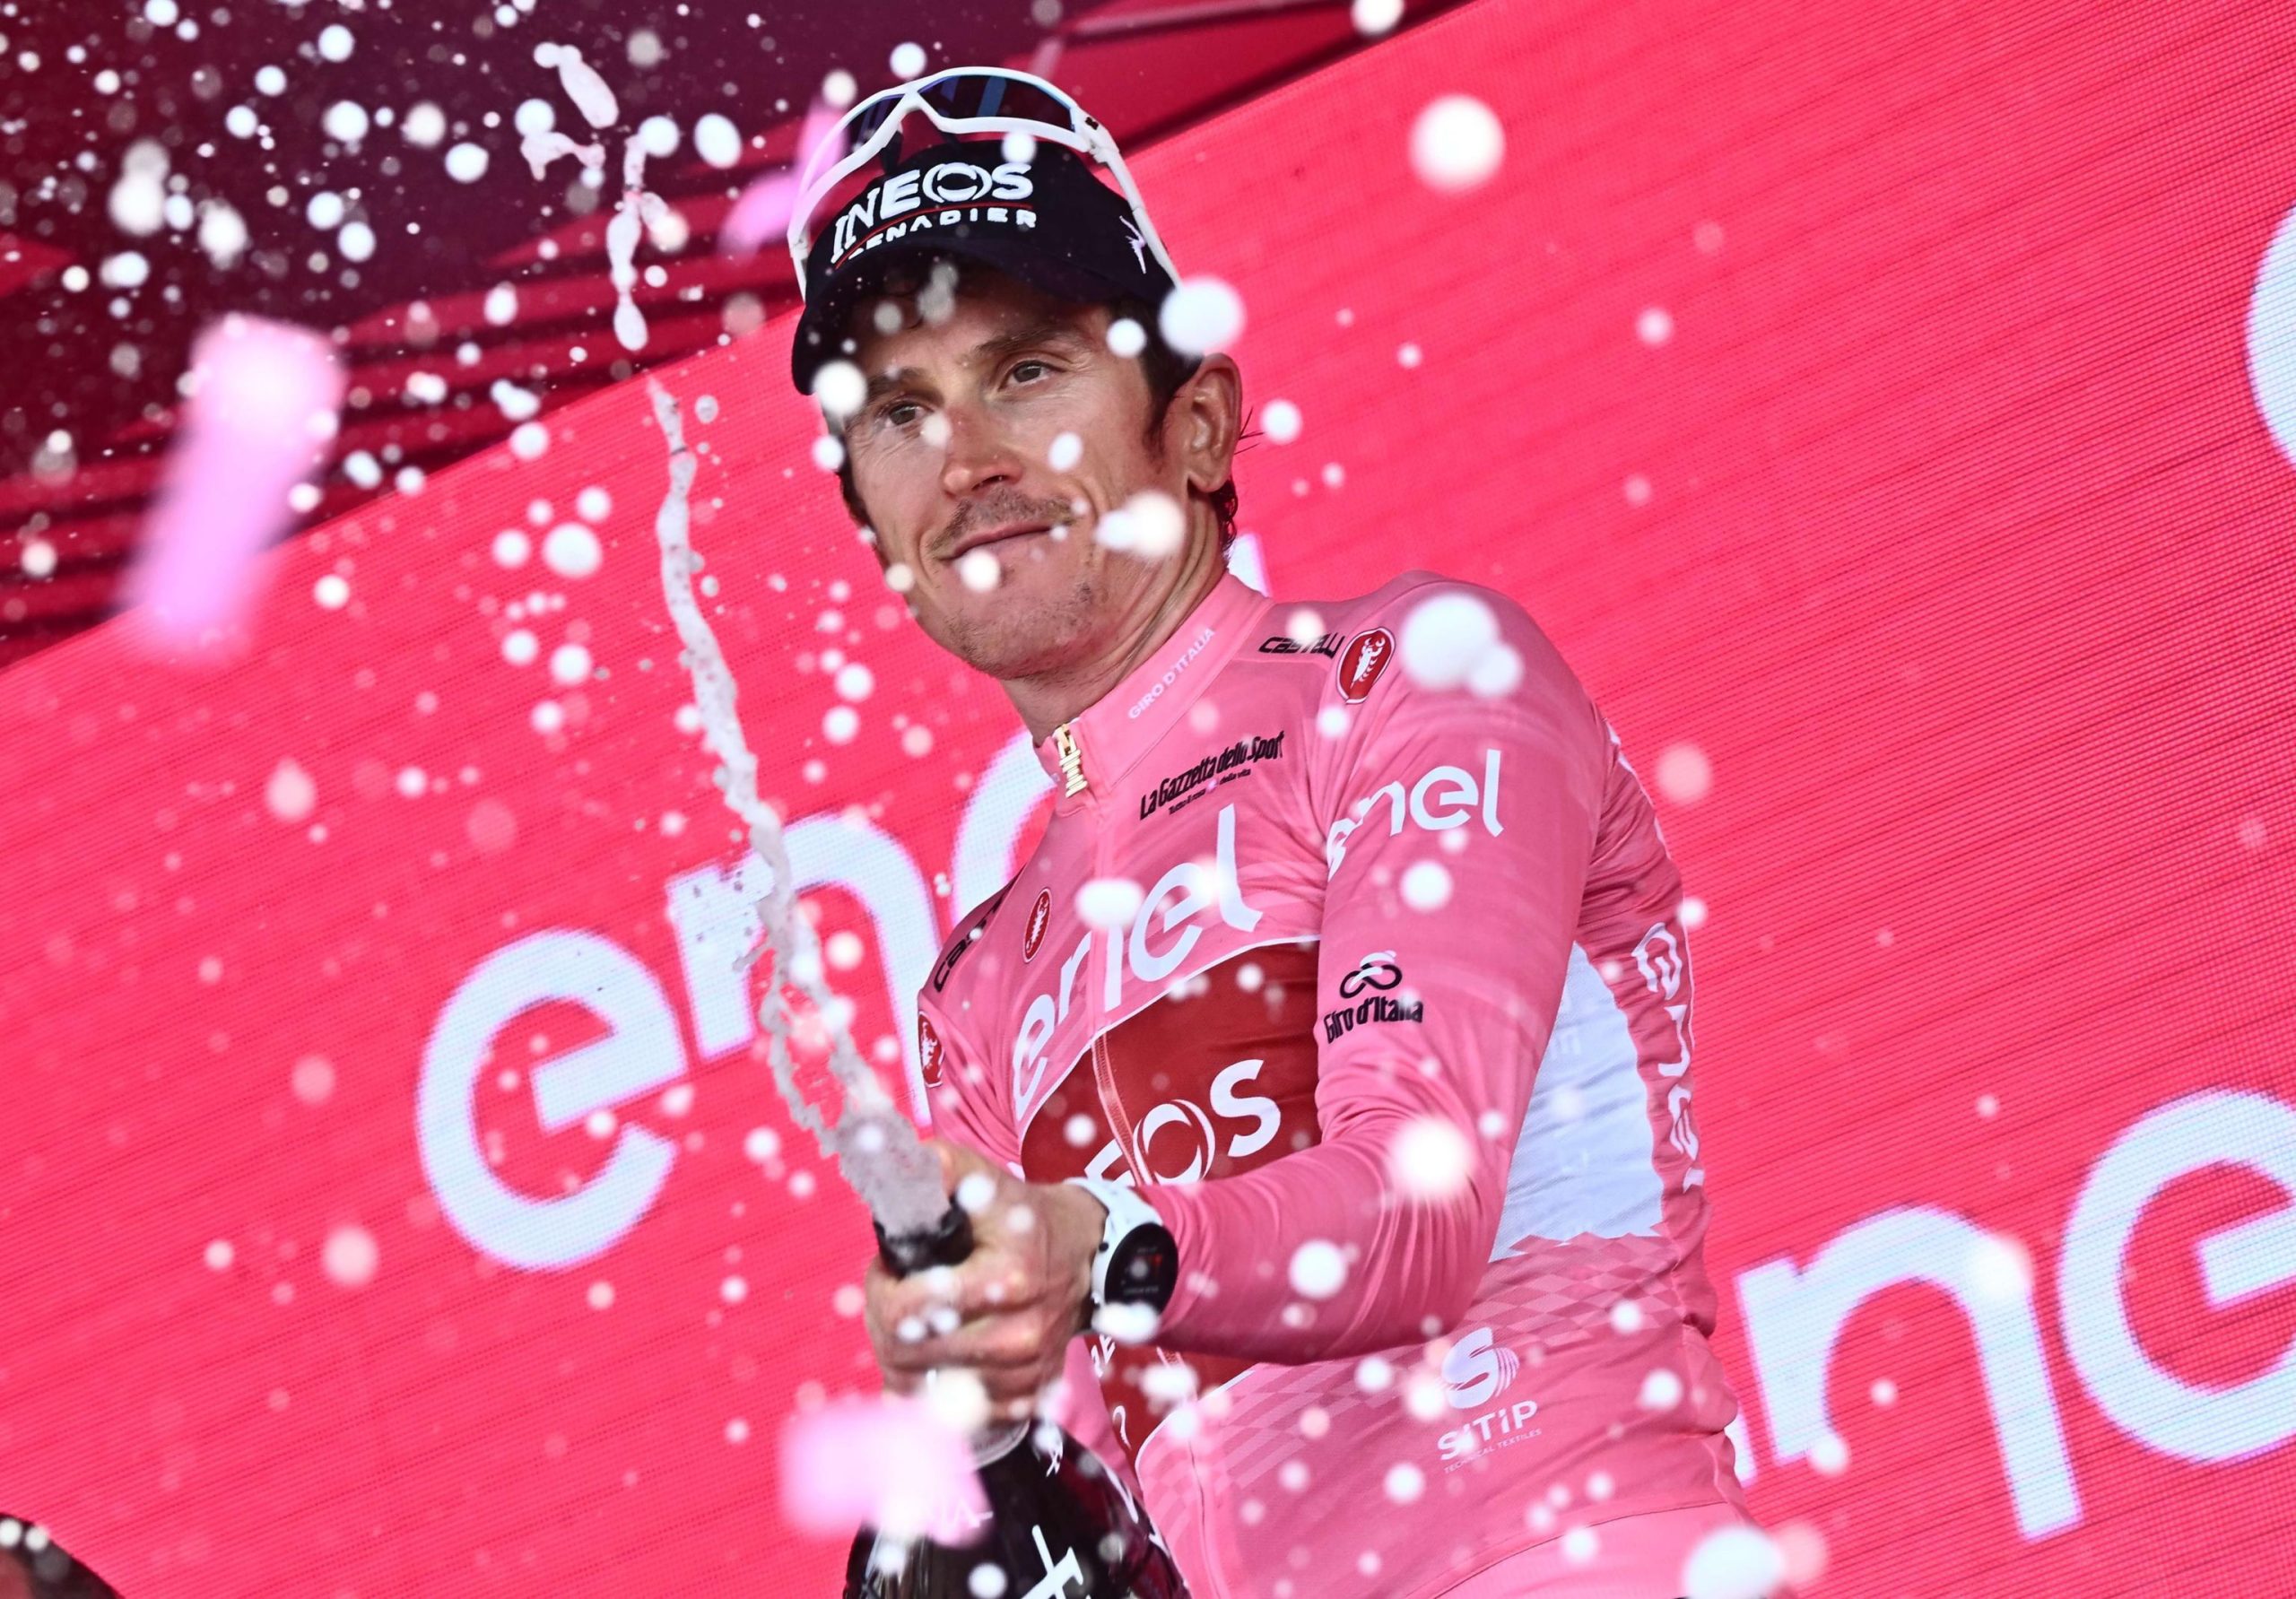 Thomas quedó segundo en el Giro el año pasado